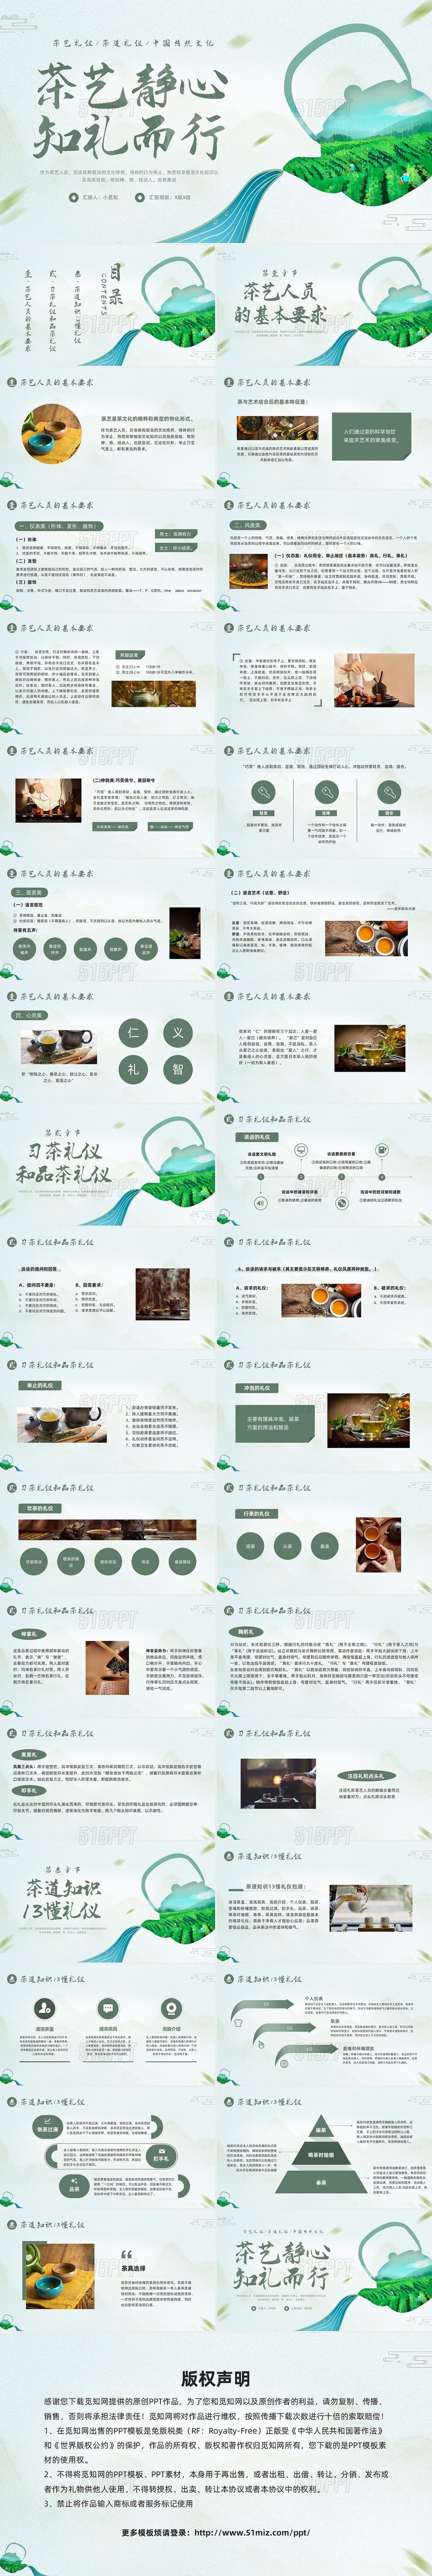 绿色简约中国传统文化茶艺静心知礼而行PPT模板宣传PPT动态文明礼仪